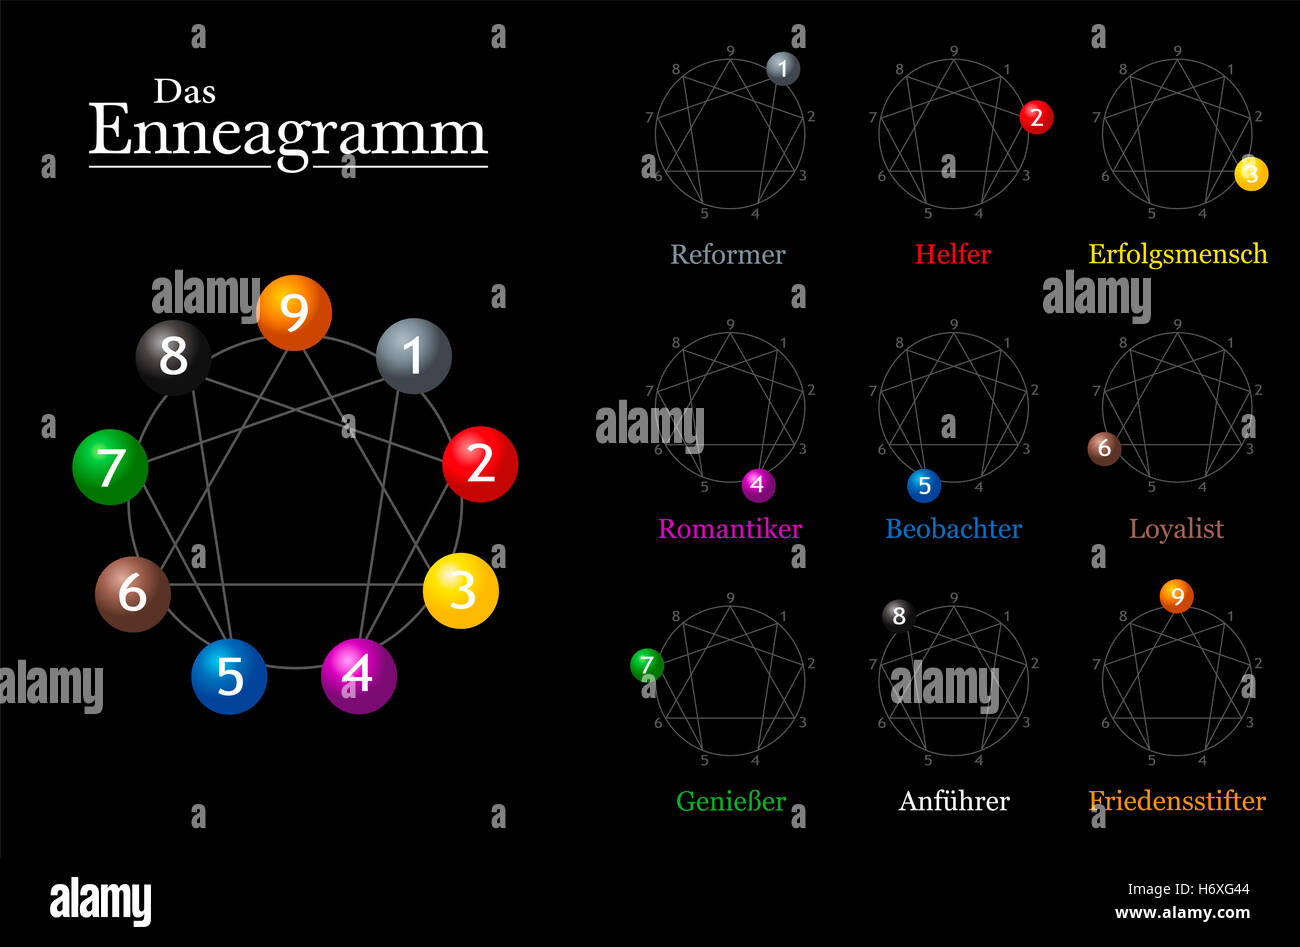 Enneagramm-Diagramm mit deutschen Namen von den neun Typen der Persönlichkeit. Stockfoto